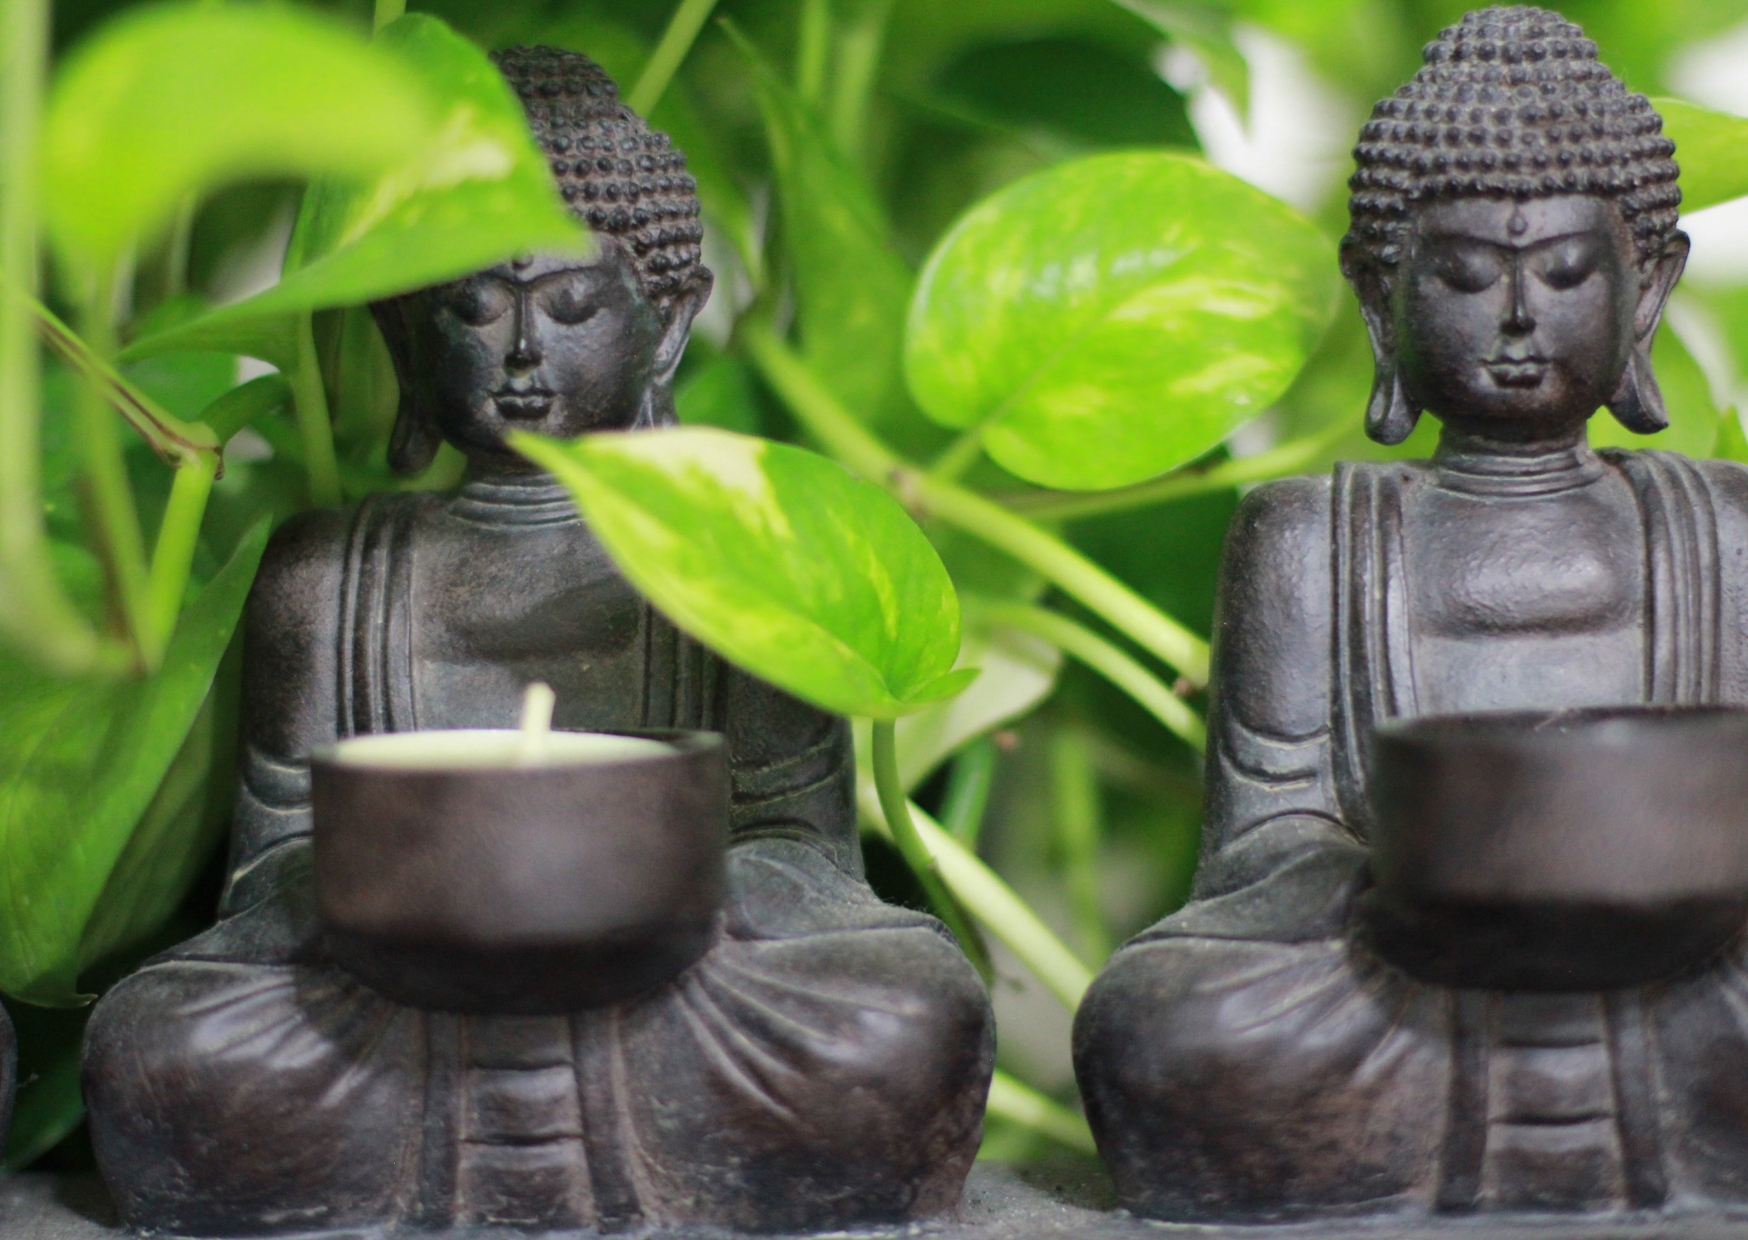 Hãy thực hành lòng nhân ái, lòng từ bi và lòng biết ơn của Đức Phật trong cuộc sống hàng ngày để mang lại hạnh phúc và an lạc cho mọi người xung quanh.